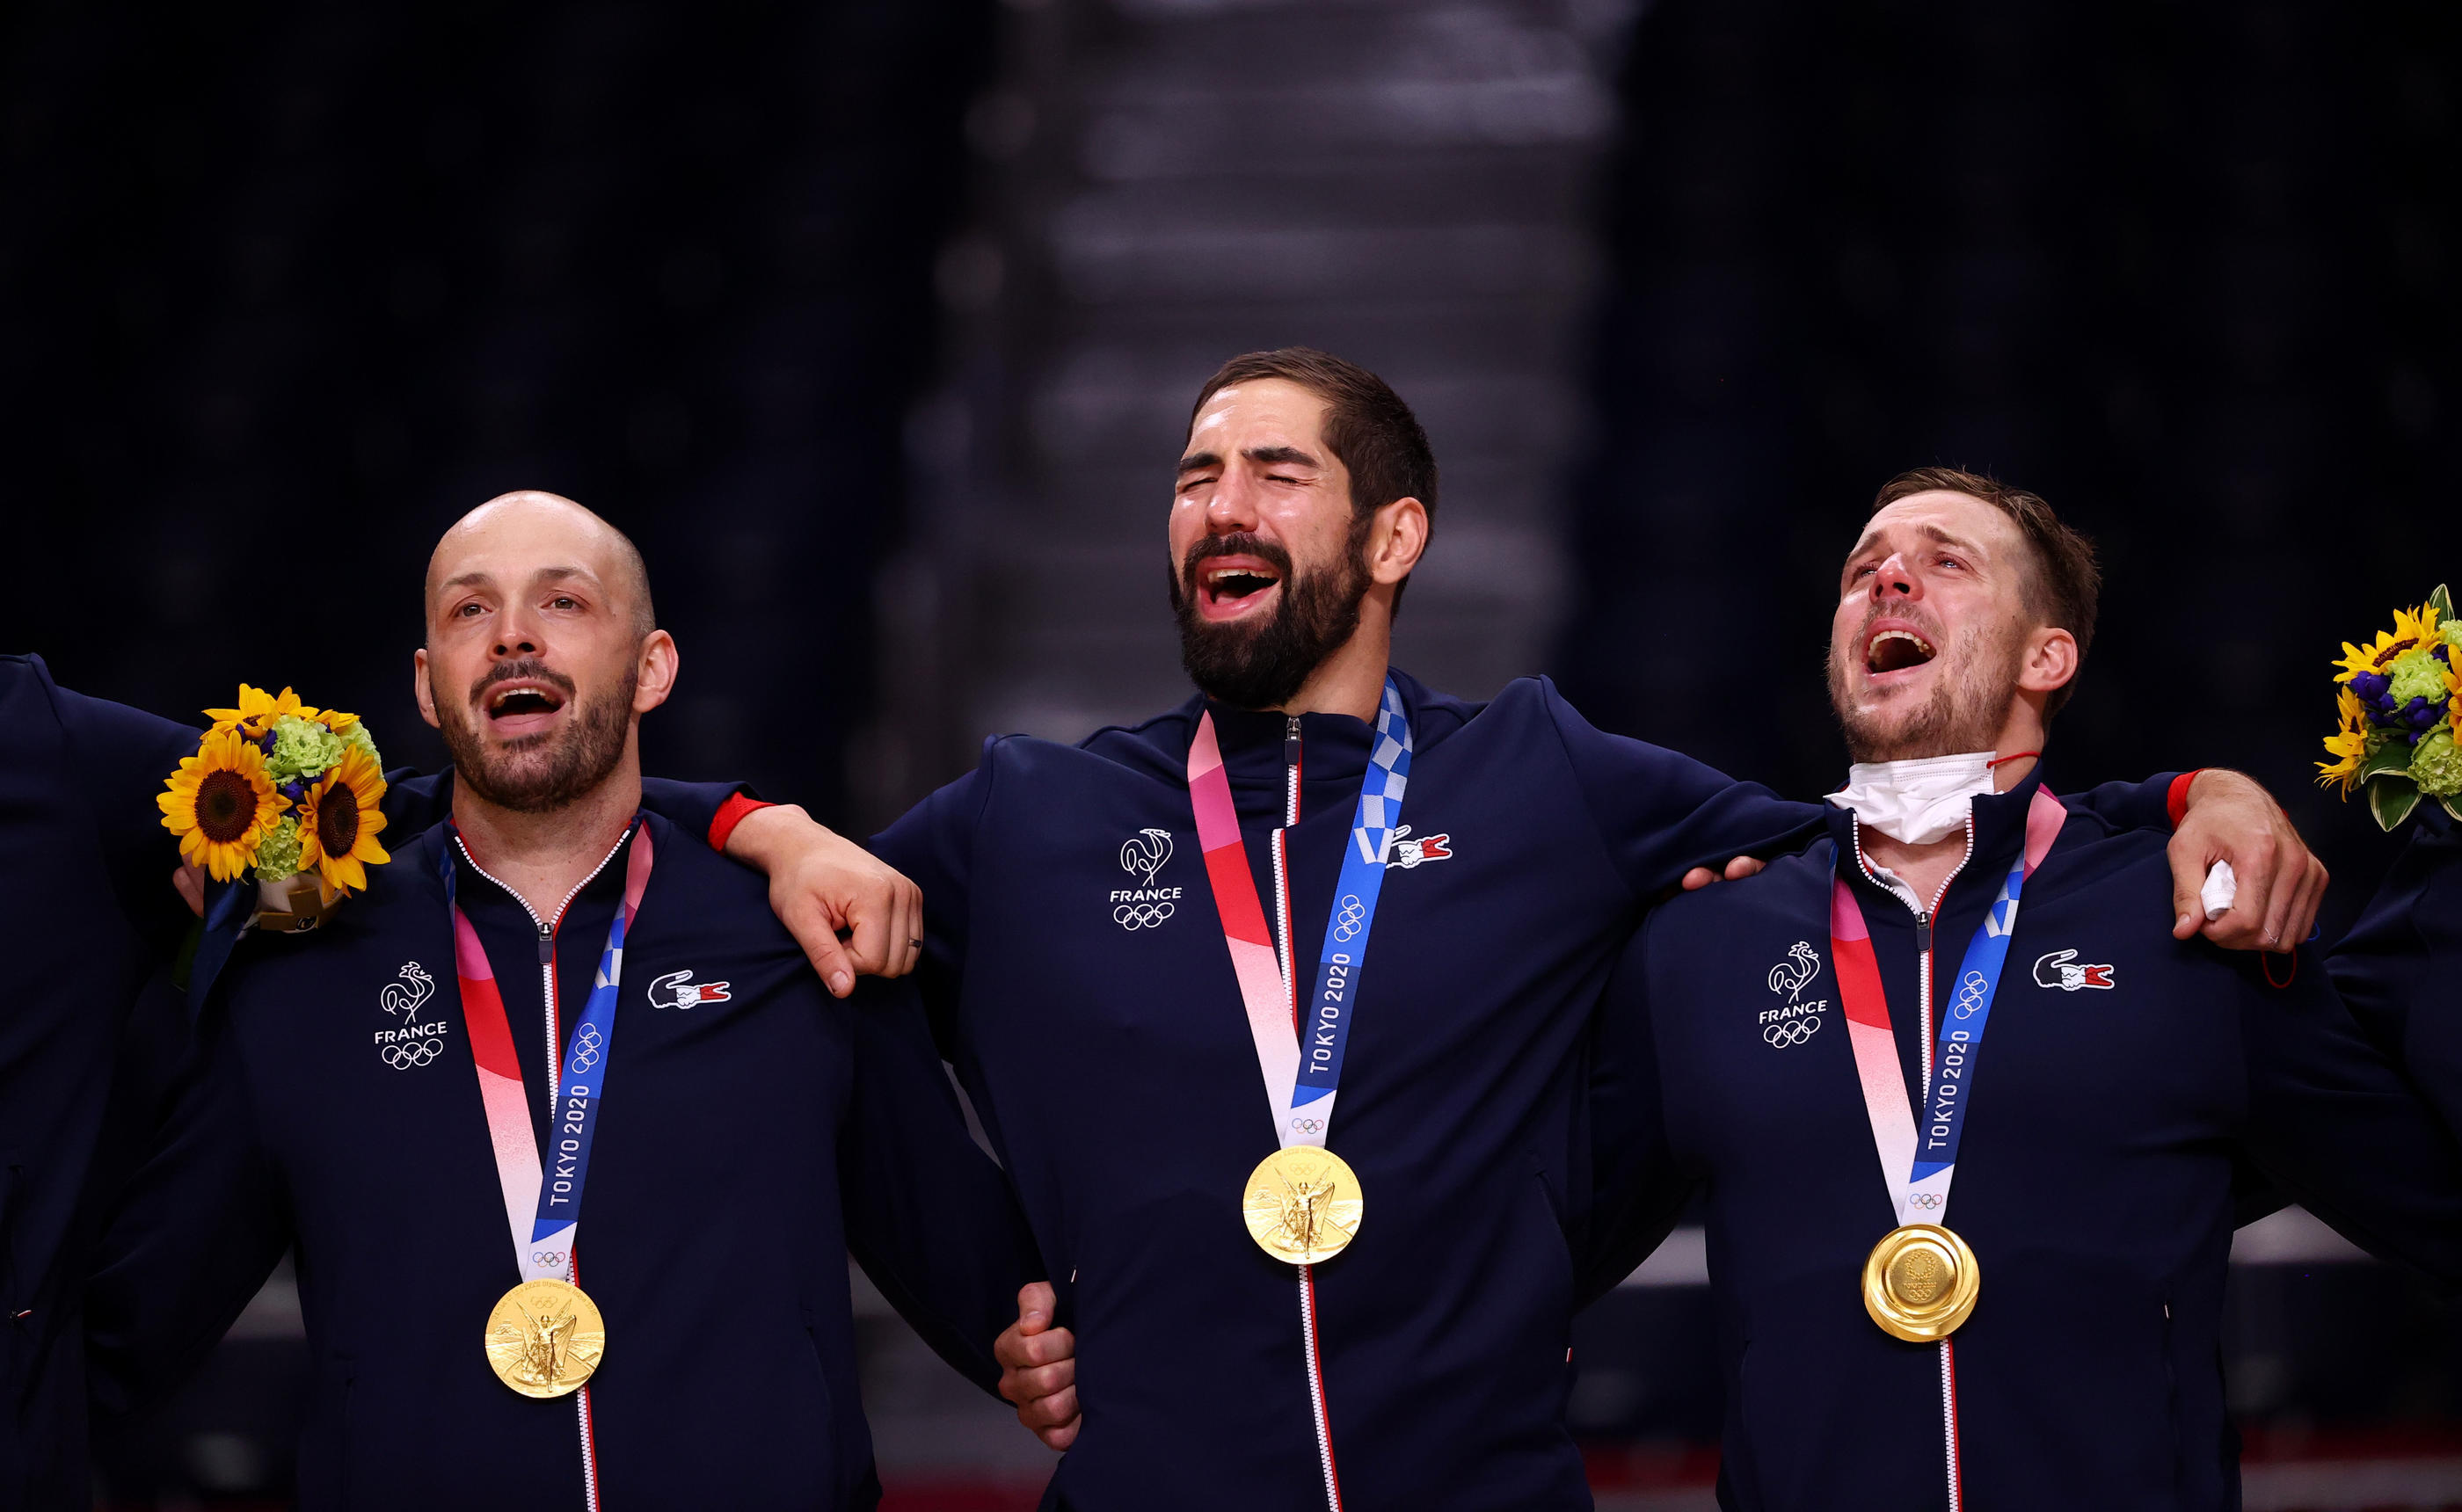 Les handballeurs français se sont offert une 3e médaille d'or olympique. REUTERS/Susana Vera